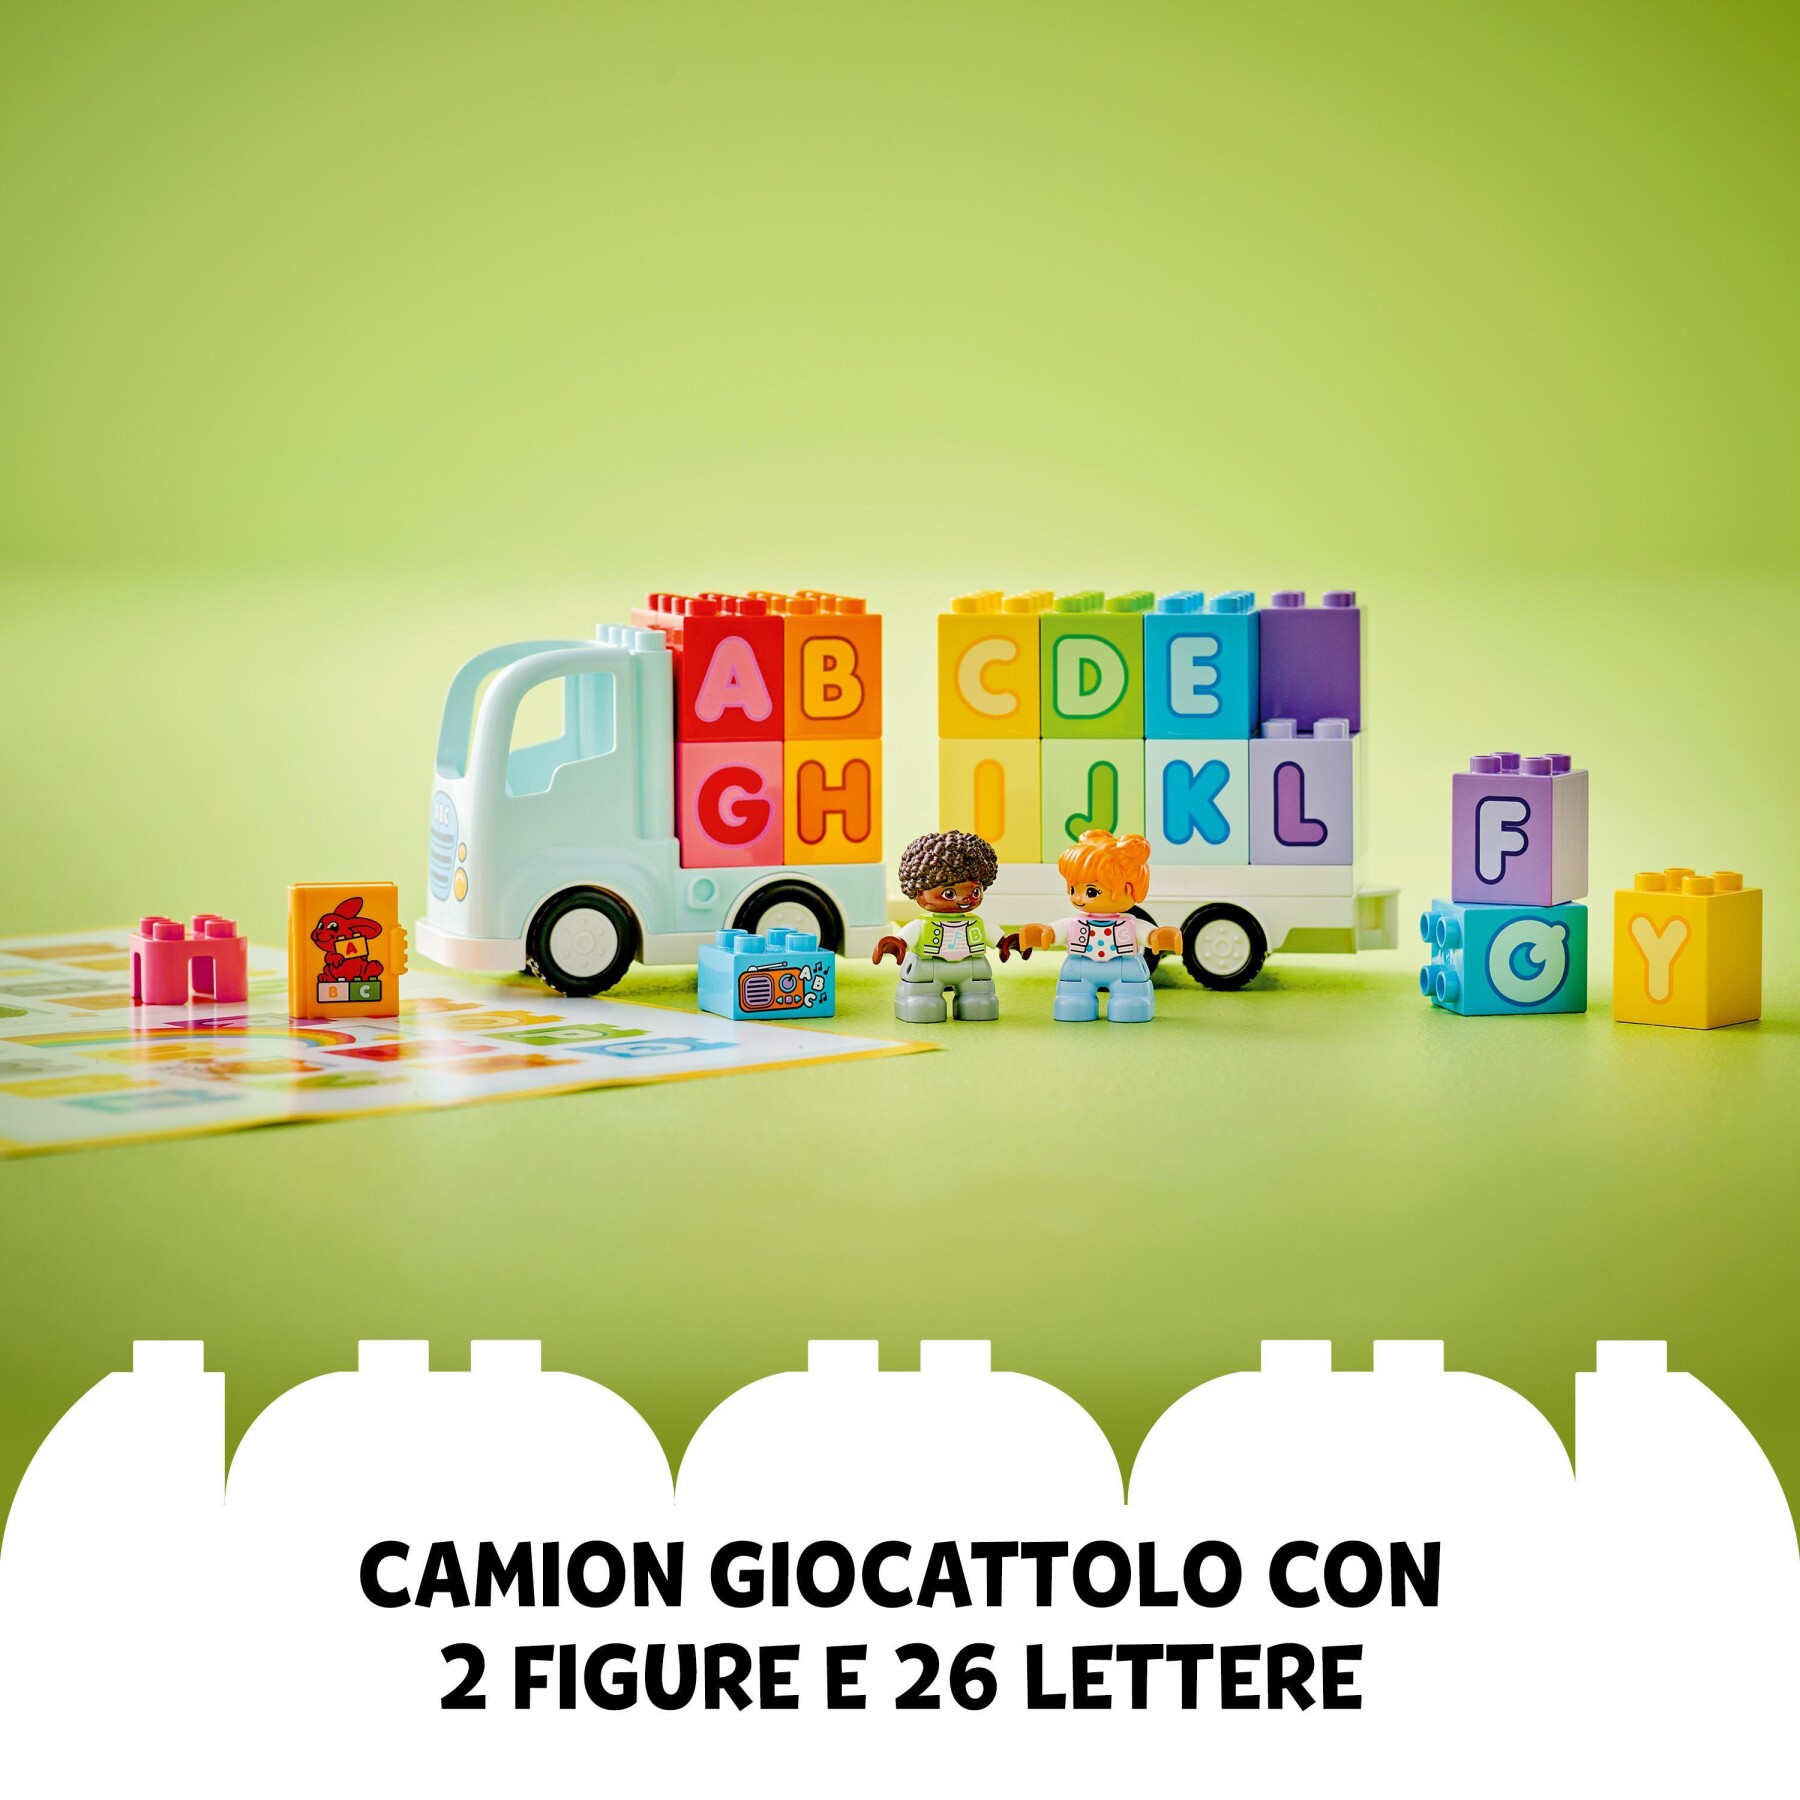 Lego duplo 10421 il camioncino dell’alfabeto, giochi educativi per bambini 2+ anni con camion giocattolo e mattoncini abc - LEGO DUPLO